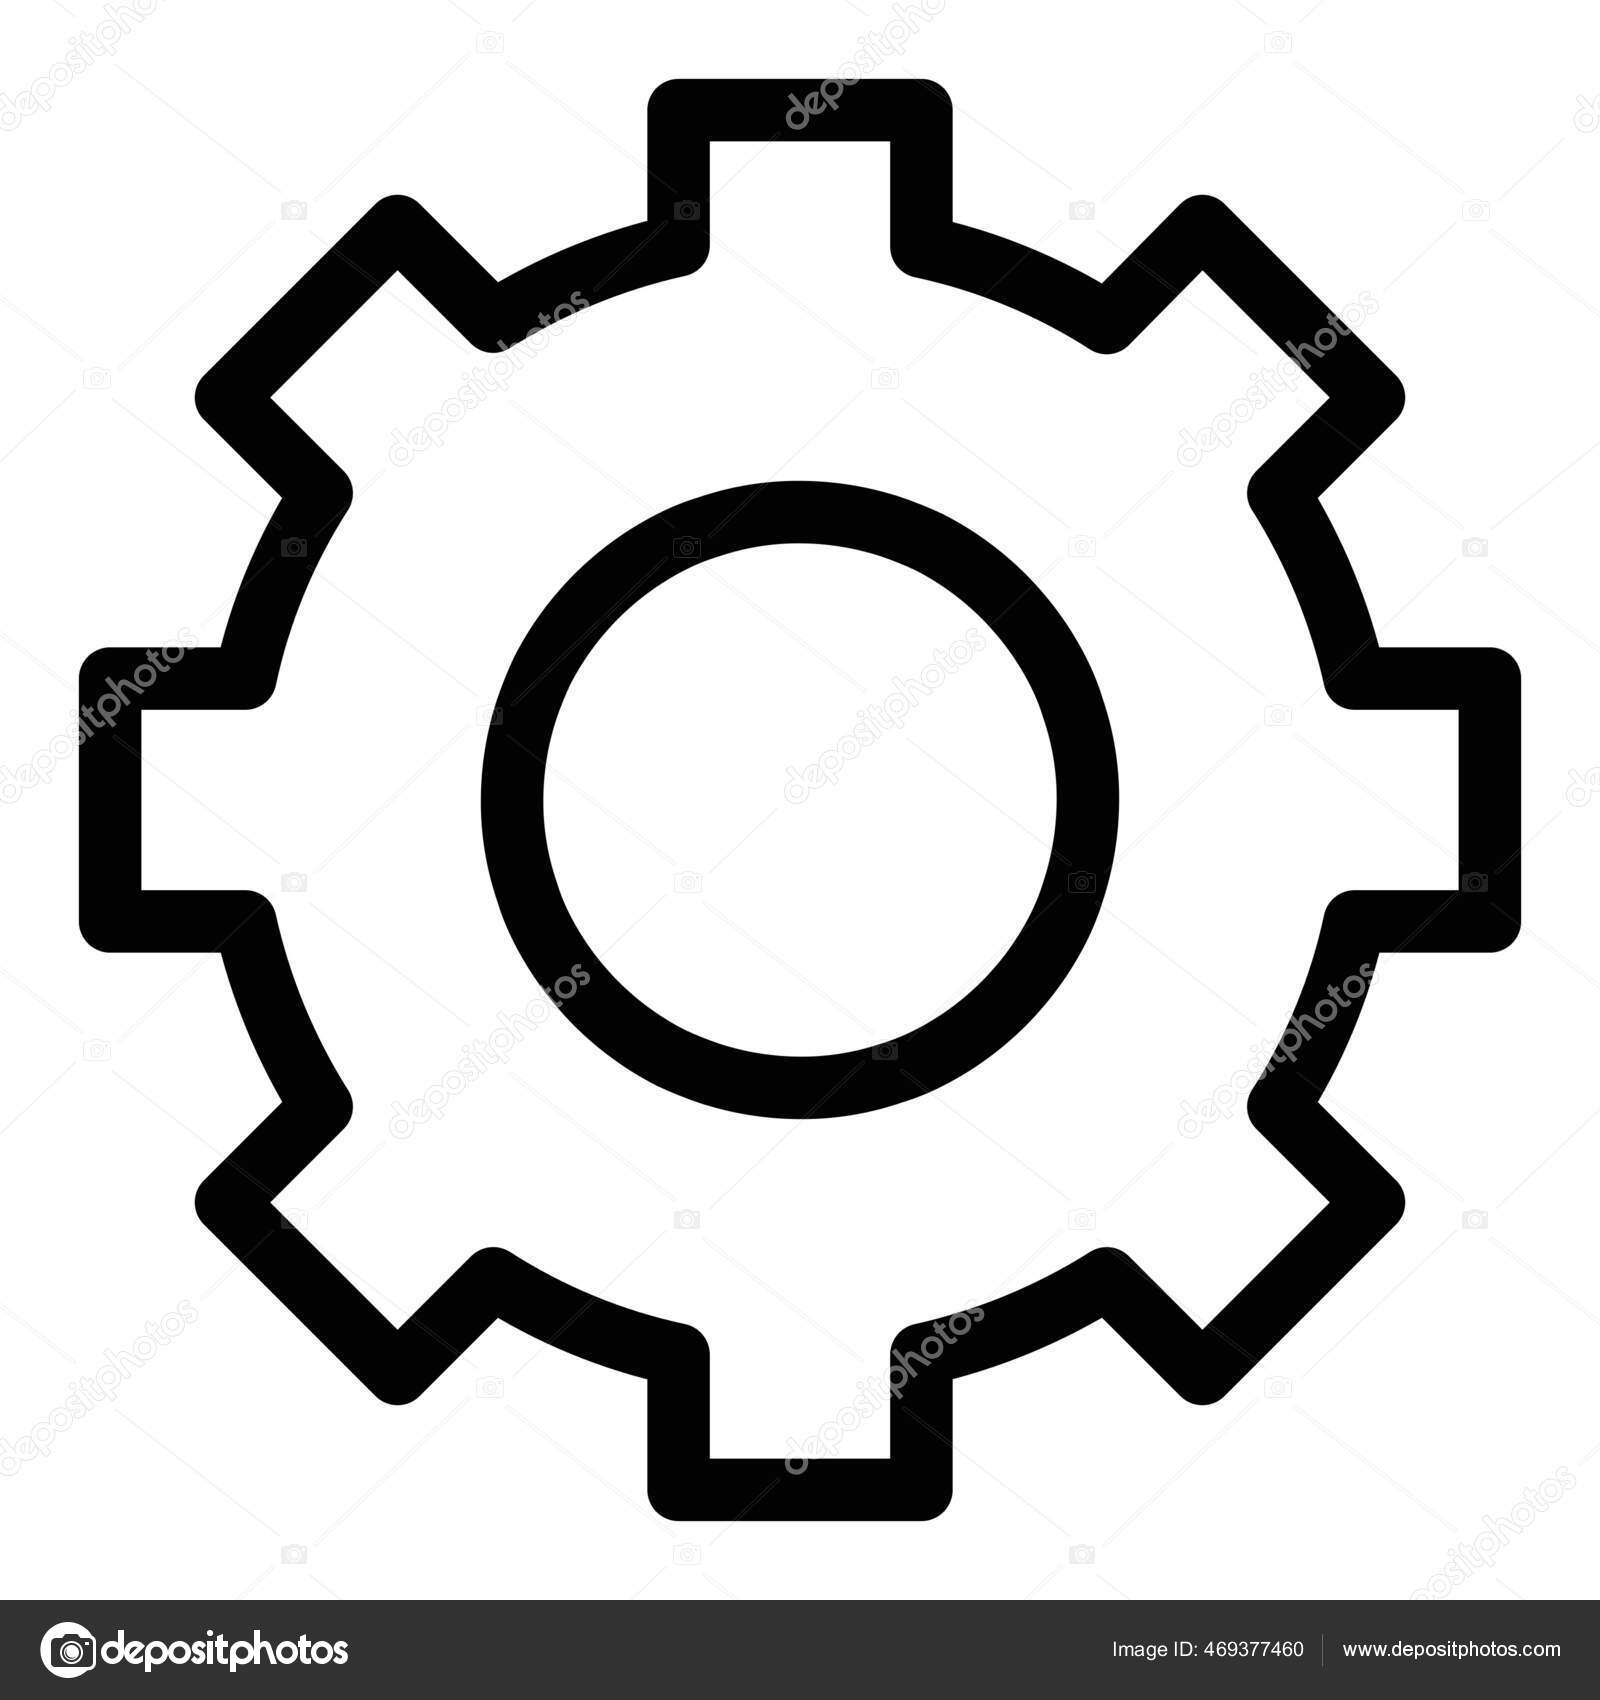 Zahnrad Icon in schwarz als Symbol für Mechanik, Konfiguration